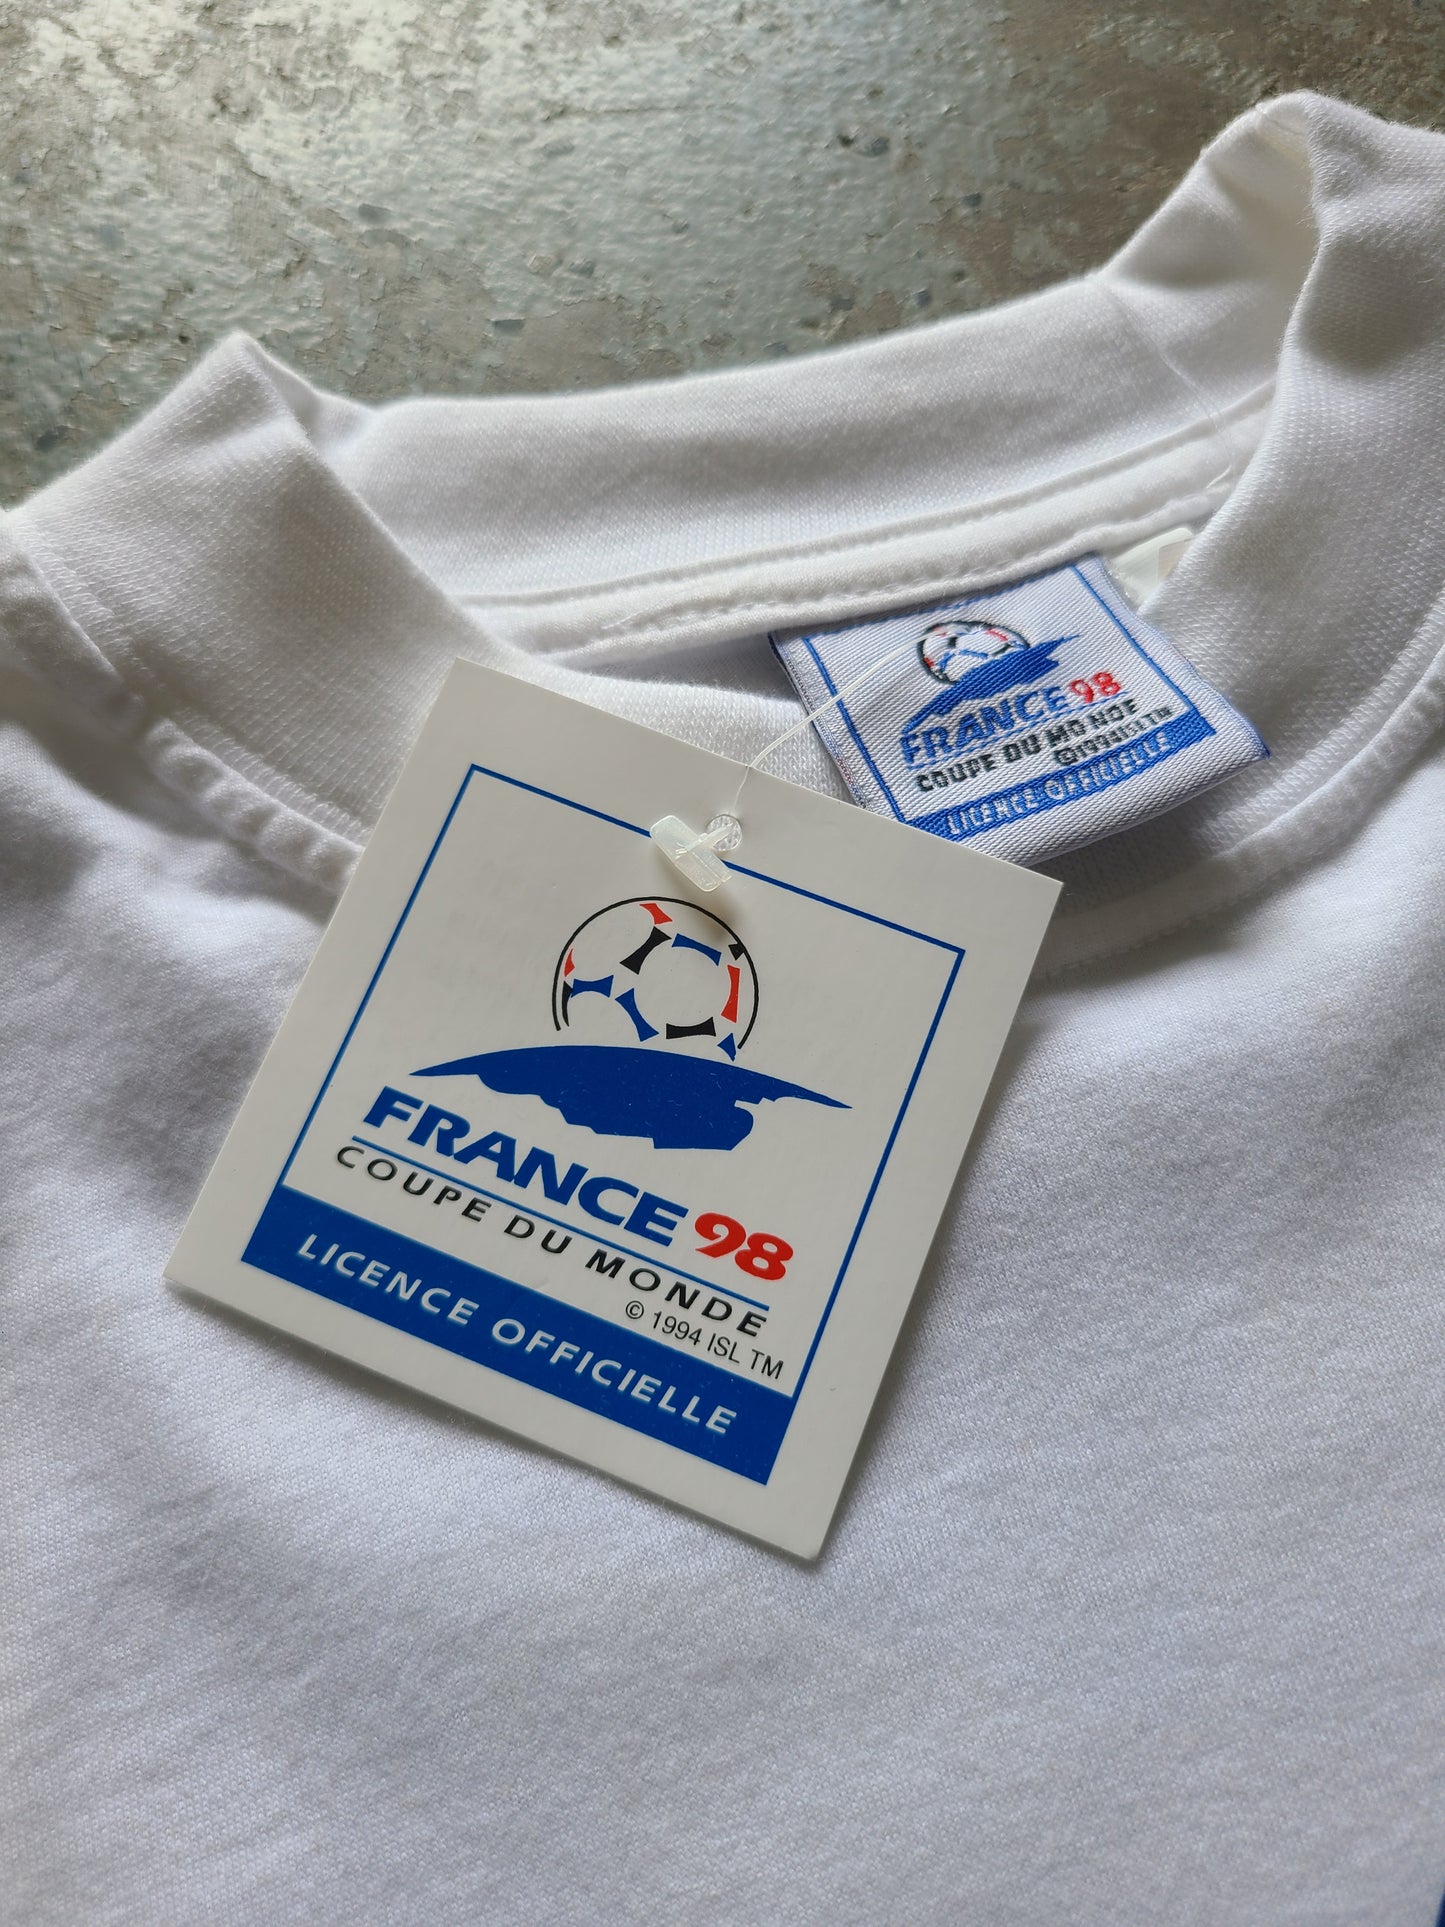 1998 France Coupe Du Monde T-shirt